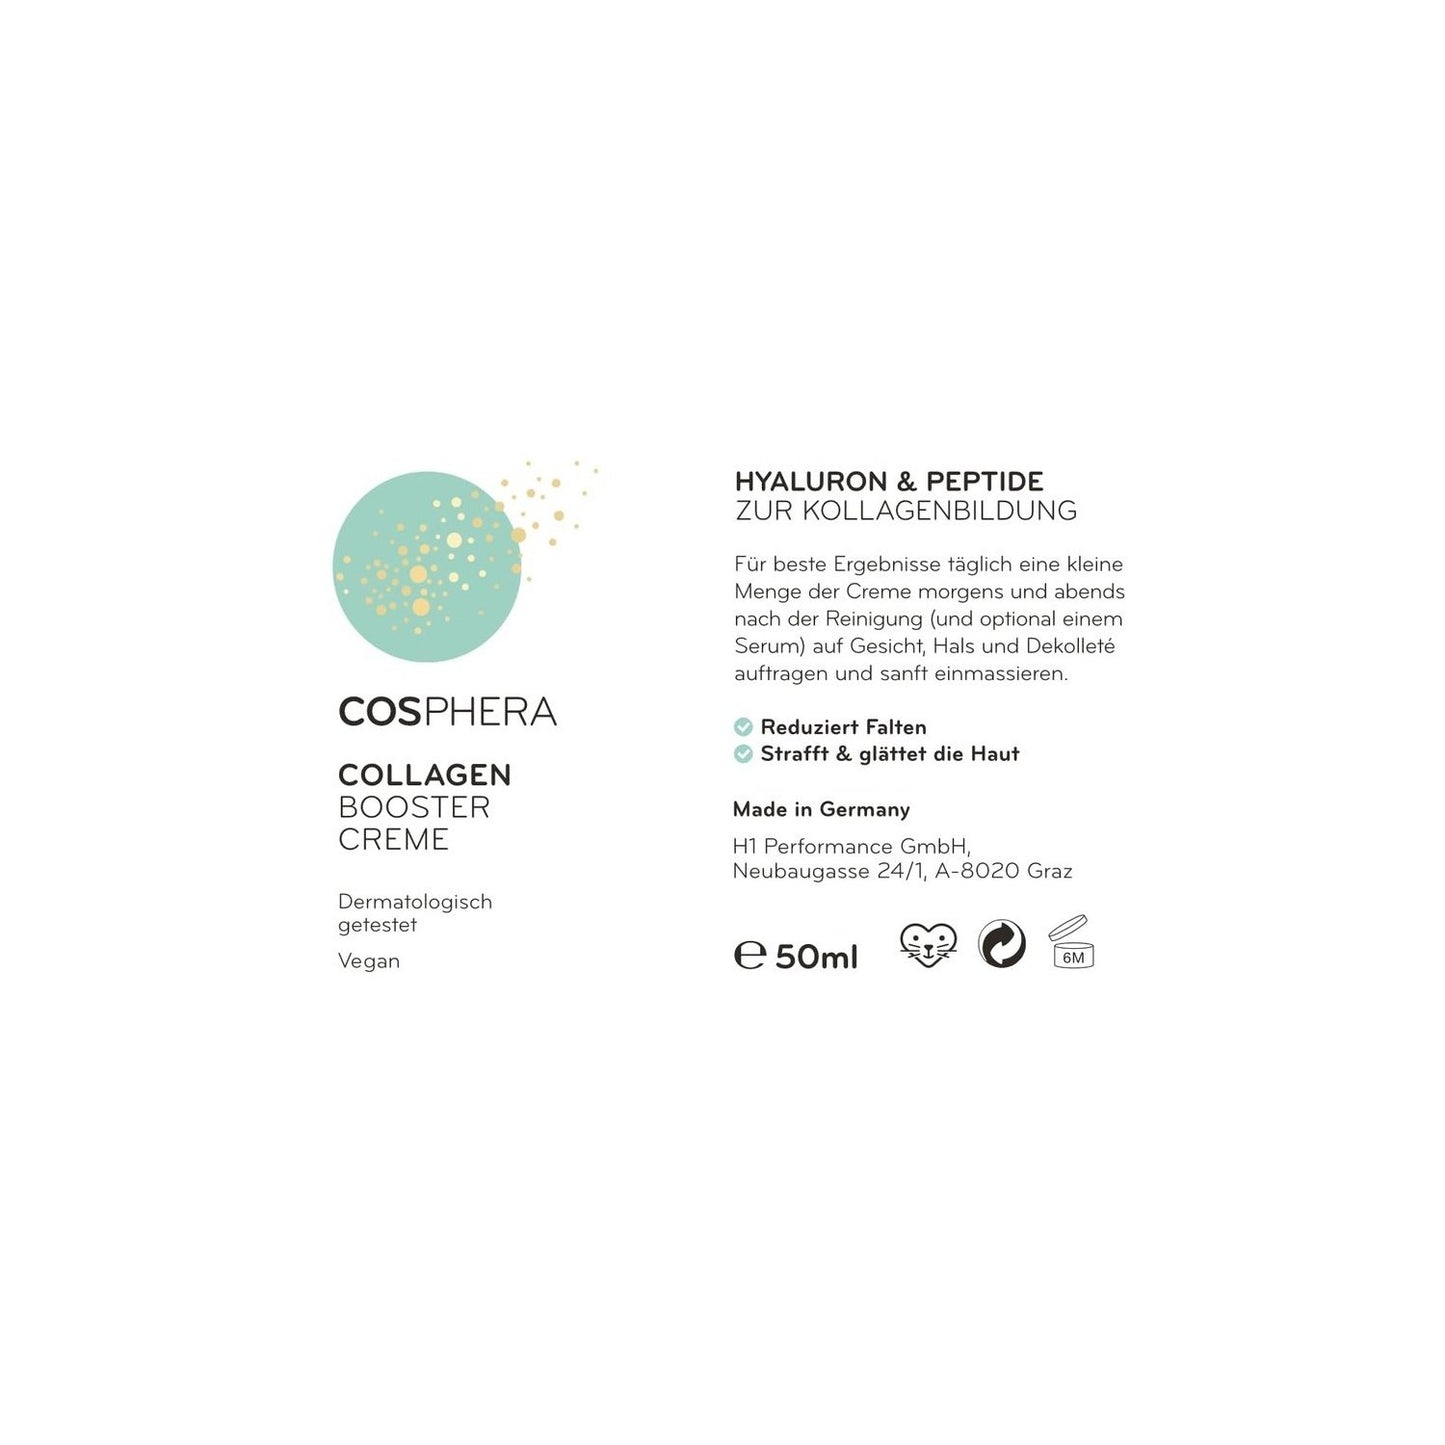 Cosphera - Collagen Booster Creme